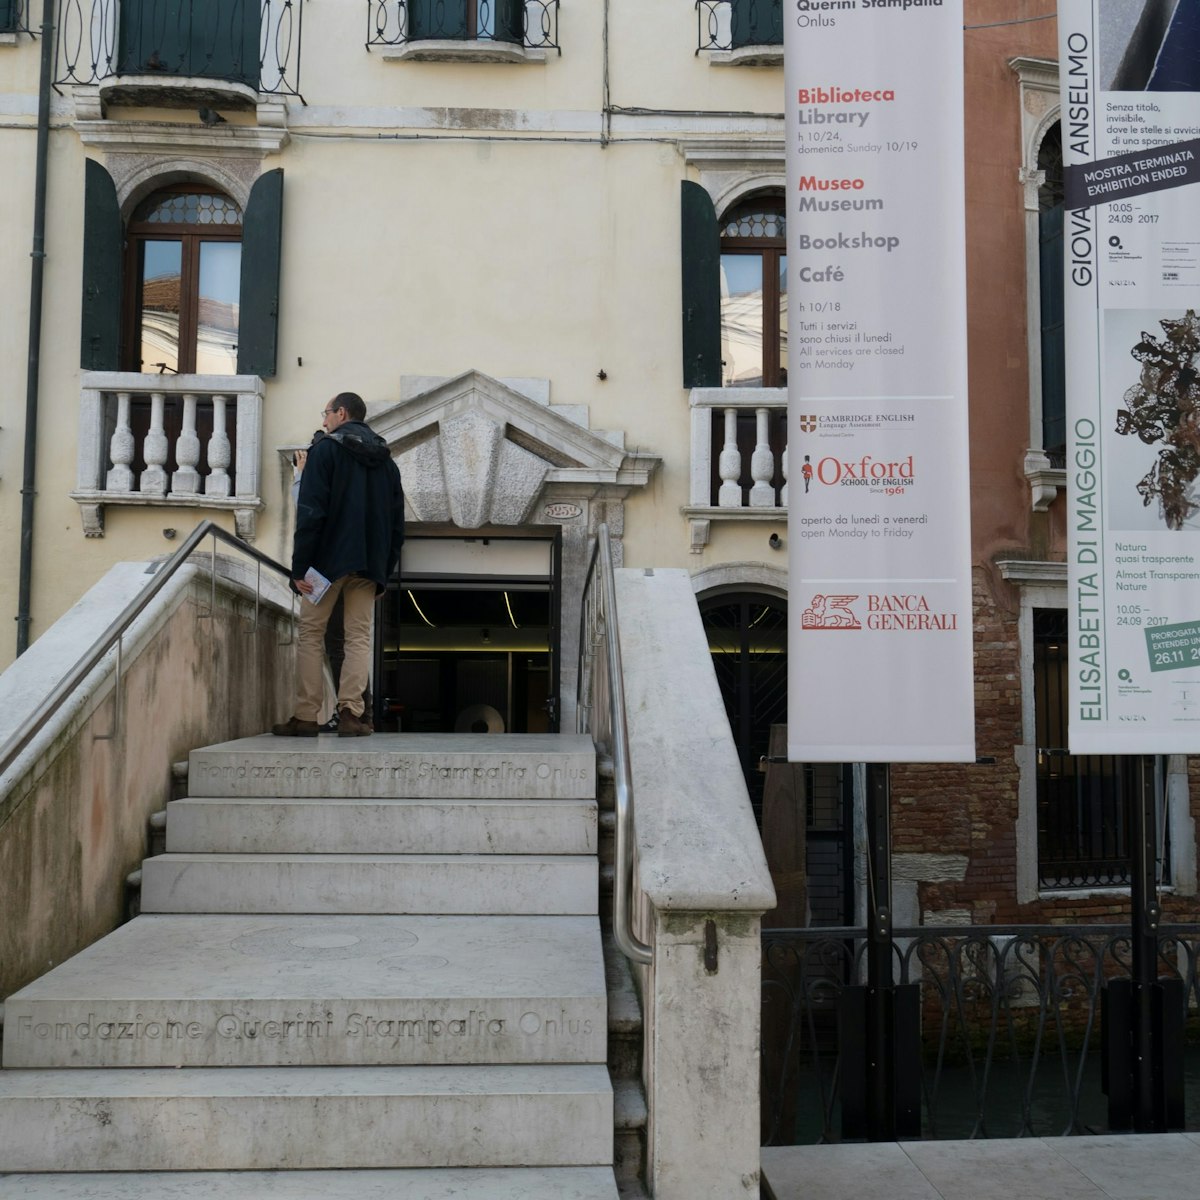 The impressive entrance to the Querini Stampalia museum complex